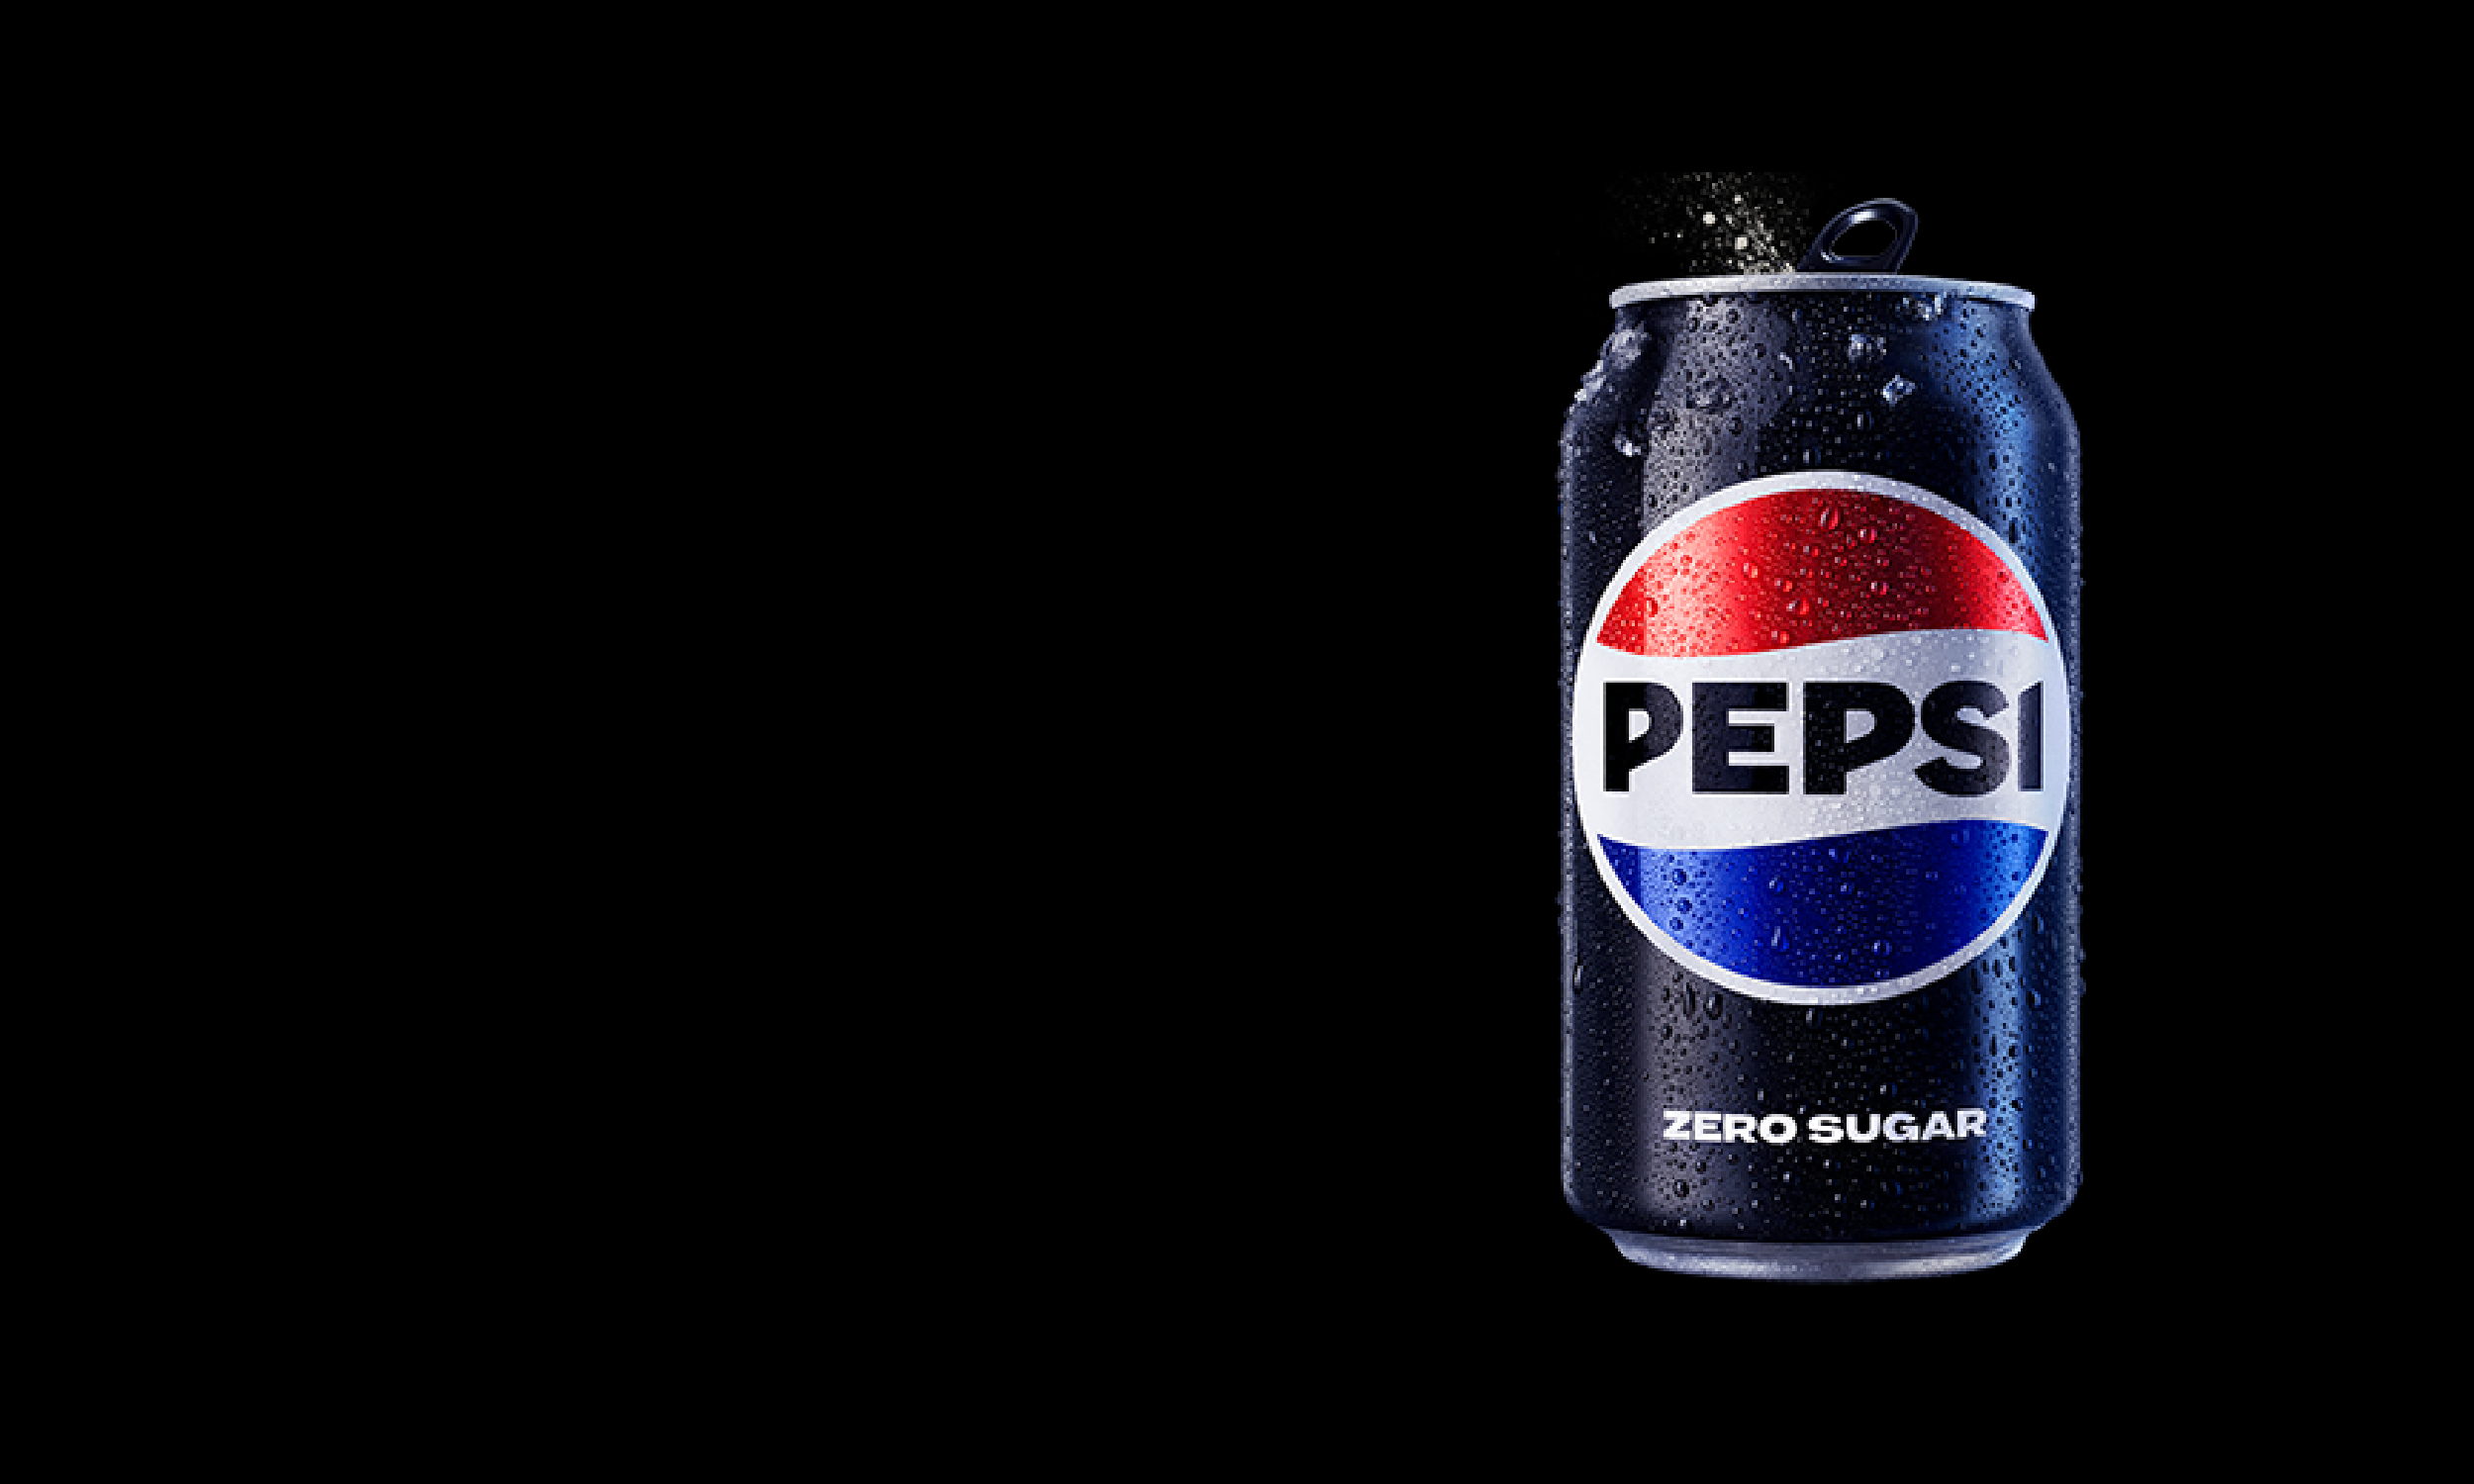 Can of Pepsi Zero Sugar